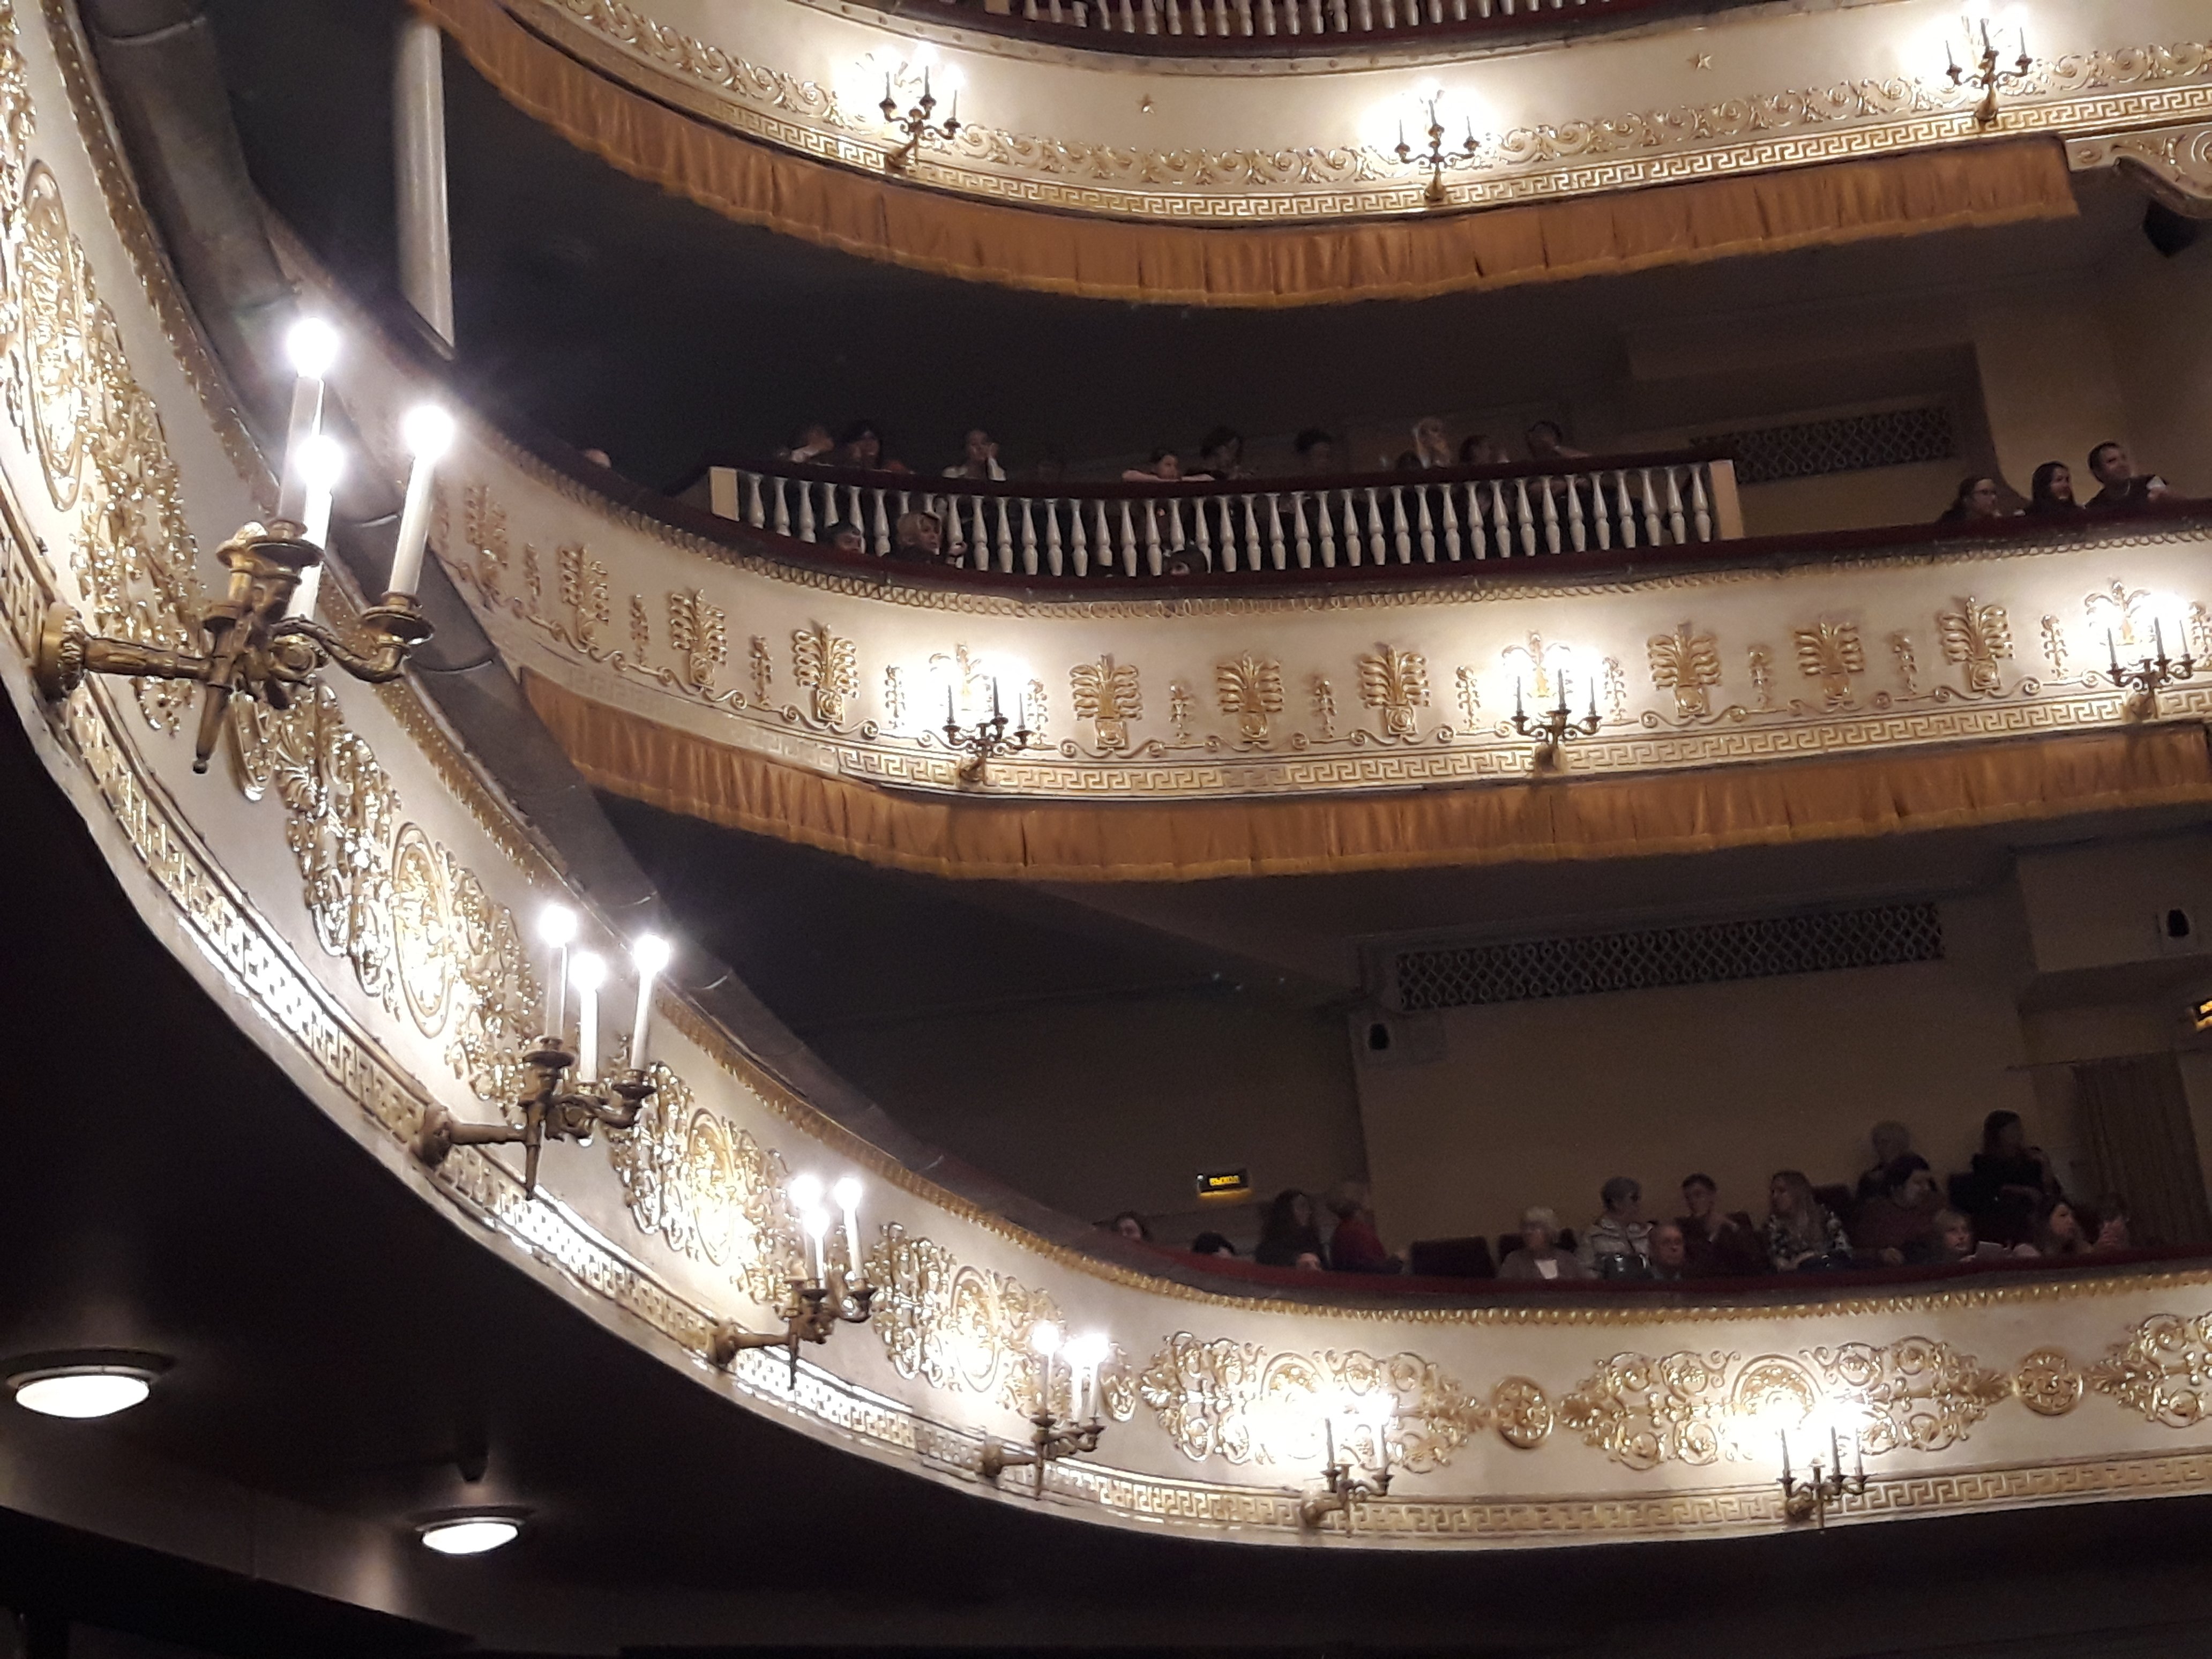 московский театр оперетты фото зала с местами